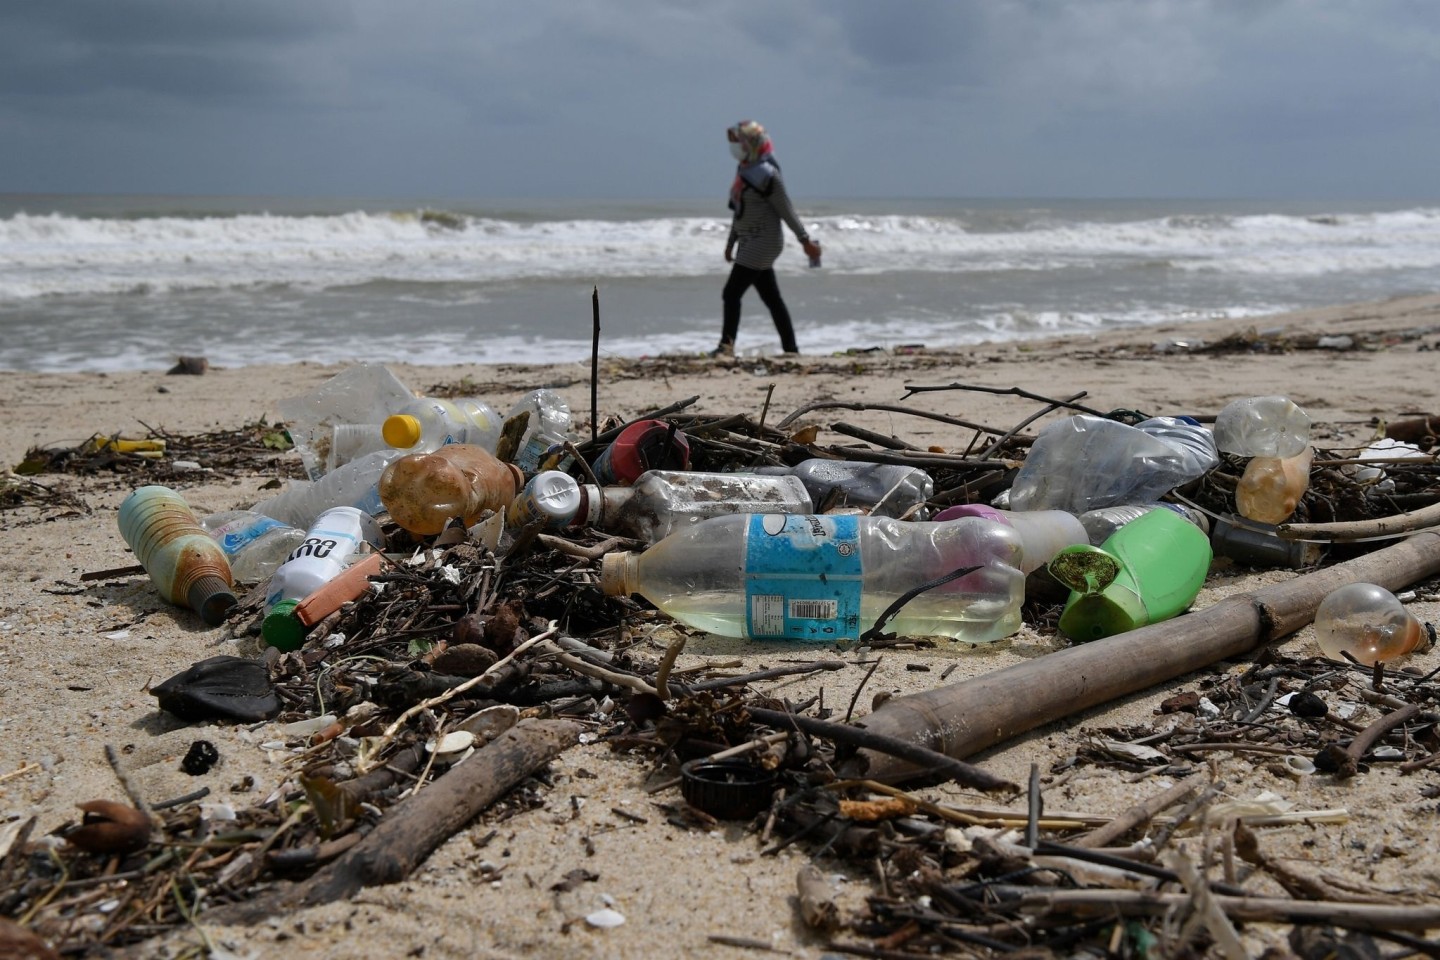 Der Planet droht am Plastikmüll zu ersticken, warnen Experten. Eine globales Abkommen soll jetzt dem Kunststoff an den Kragen.